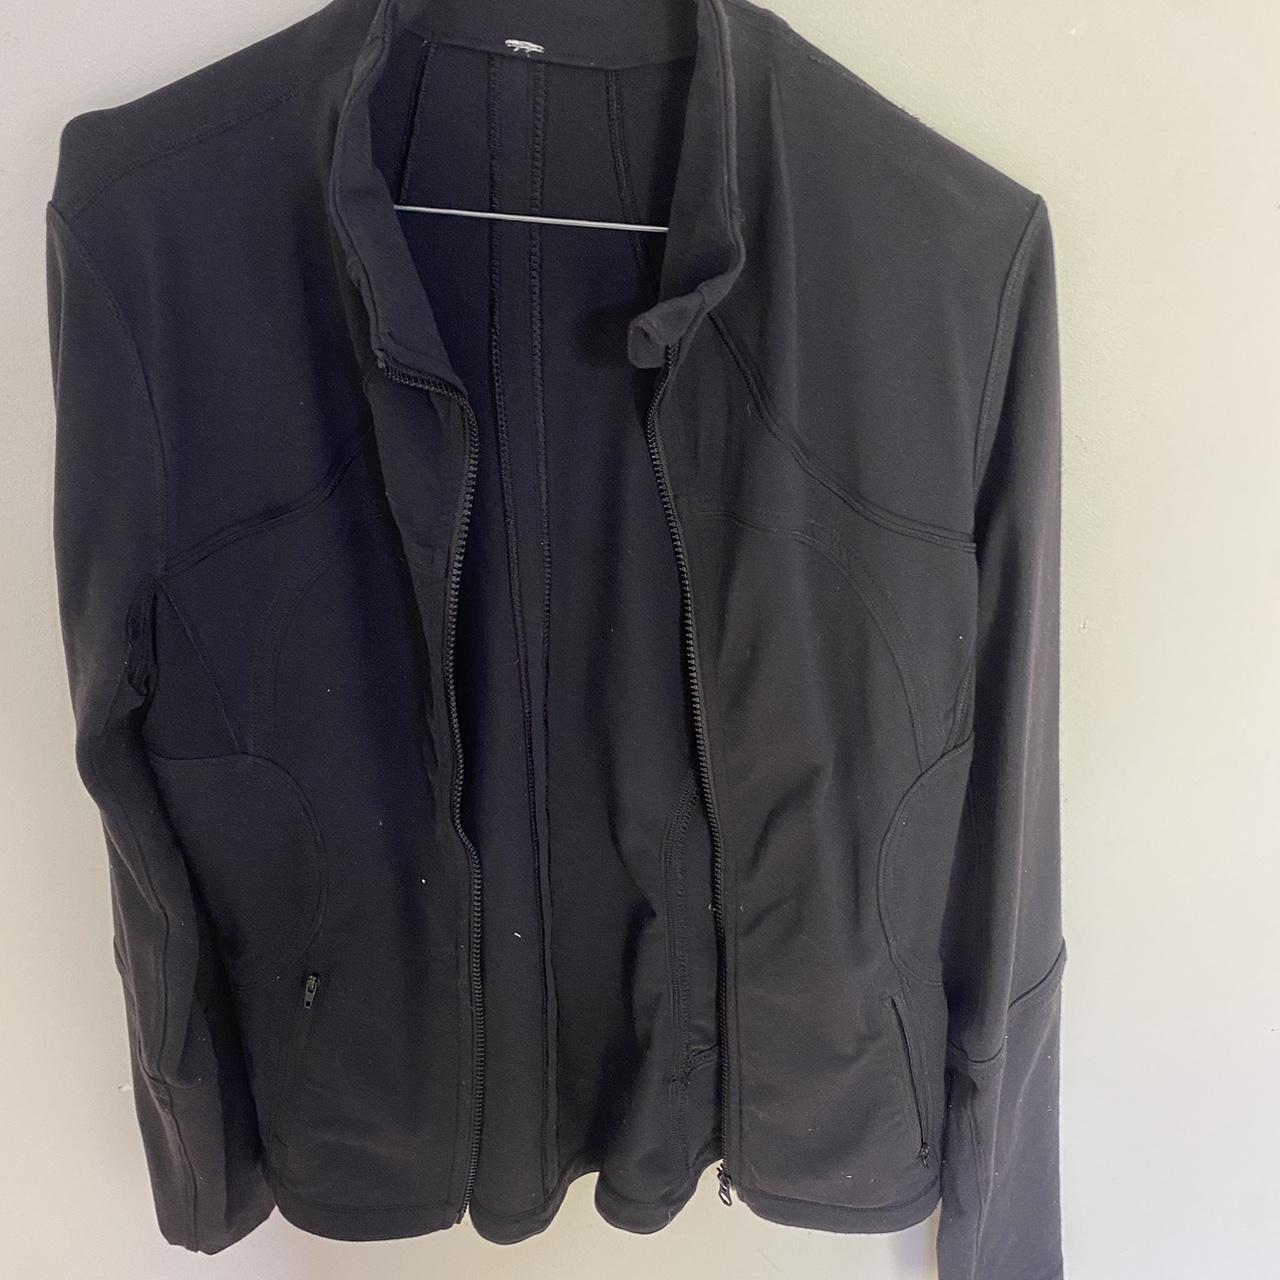 authentic lululemon jacket mint condition except tag... - Depop